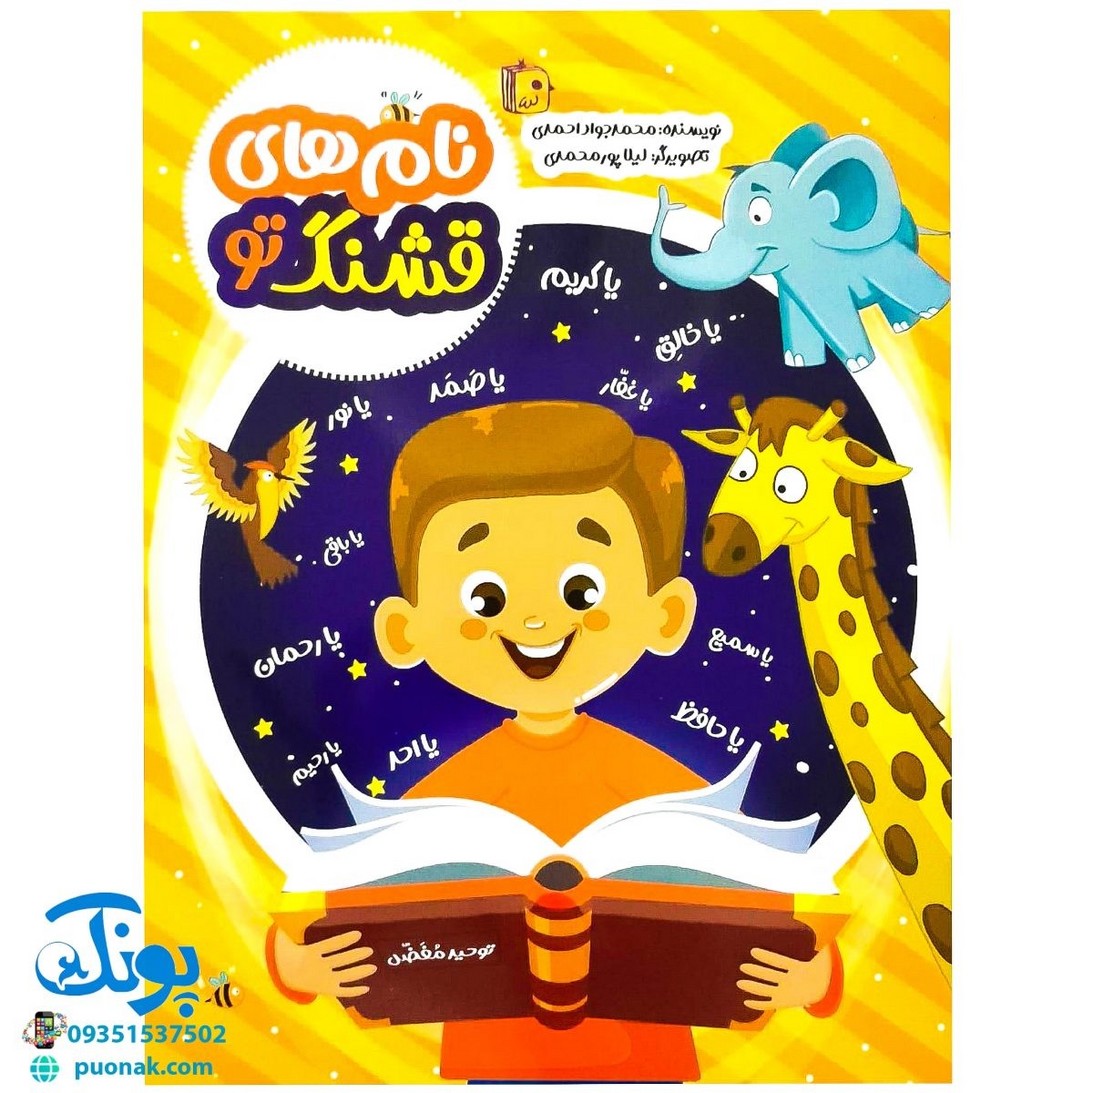 کتاب نام های قشنگ تو (این کتاب که برای گروه سنی کودک نوشته شده است سعی شده با تصویرهای زیبا و داستان‌های جذاب کودکان را با نام‌های خداوند آشنا کند)